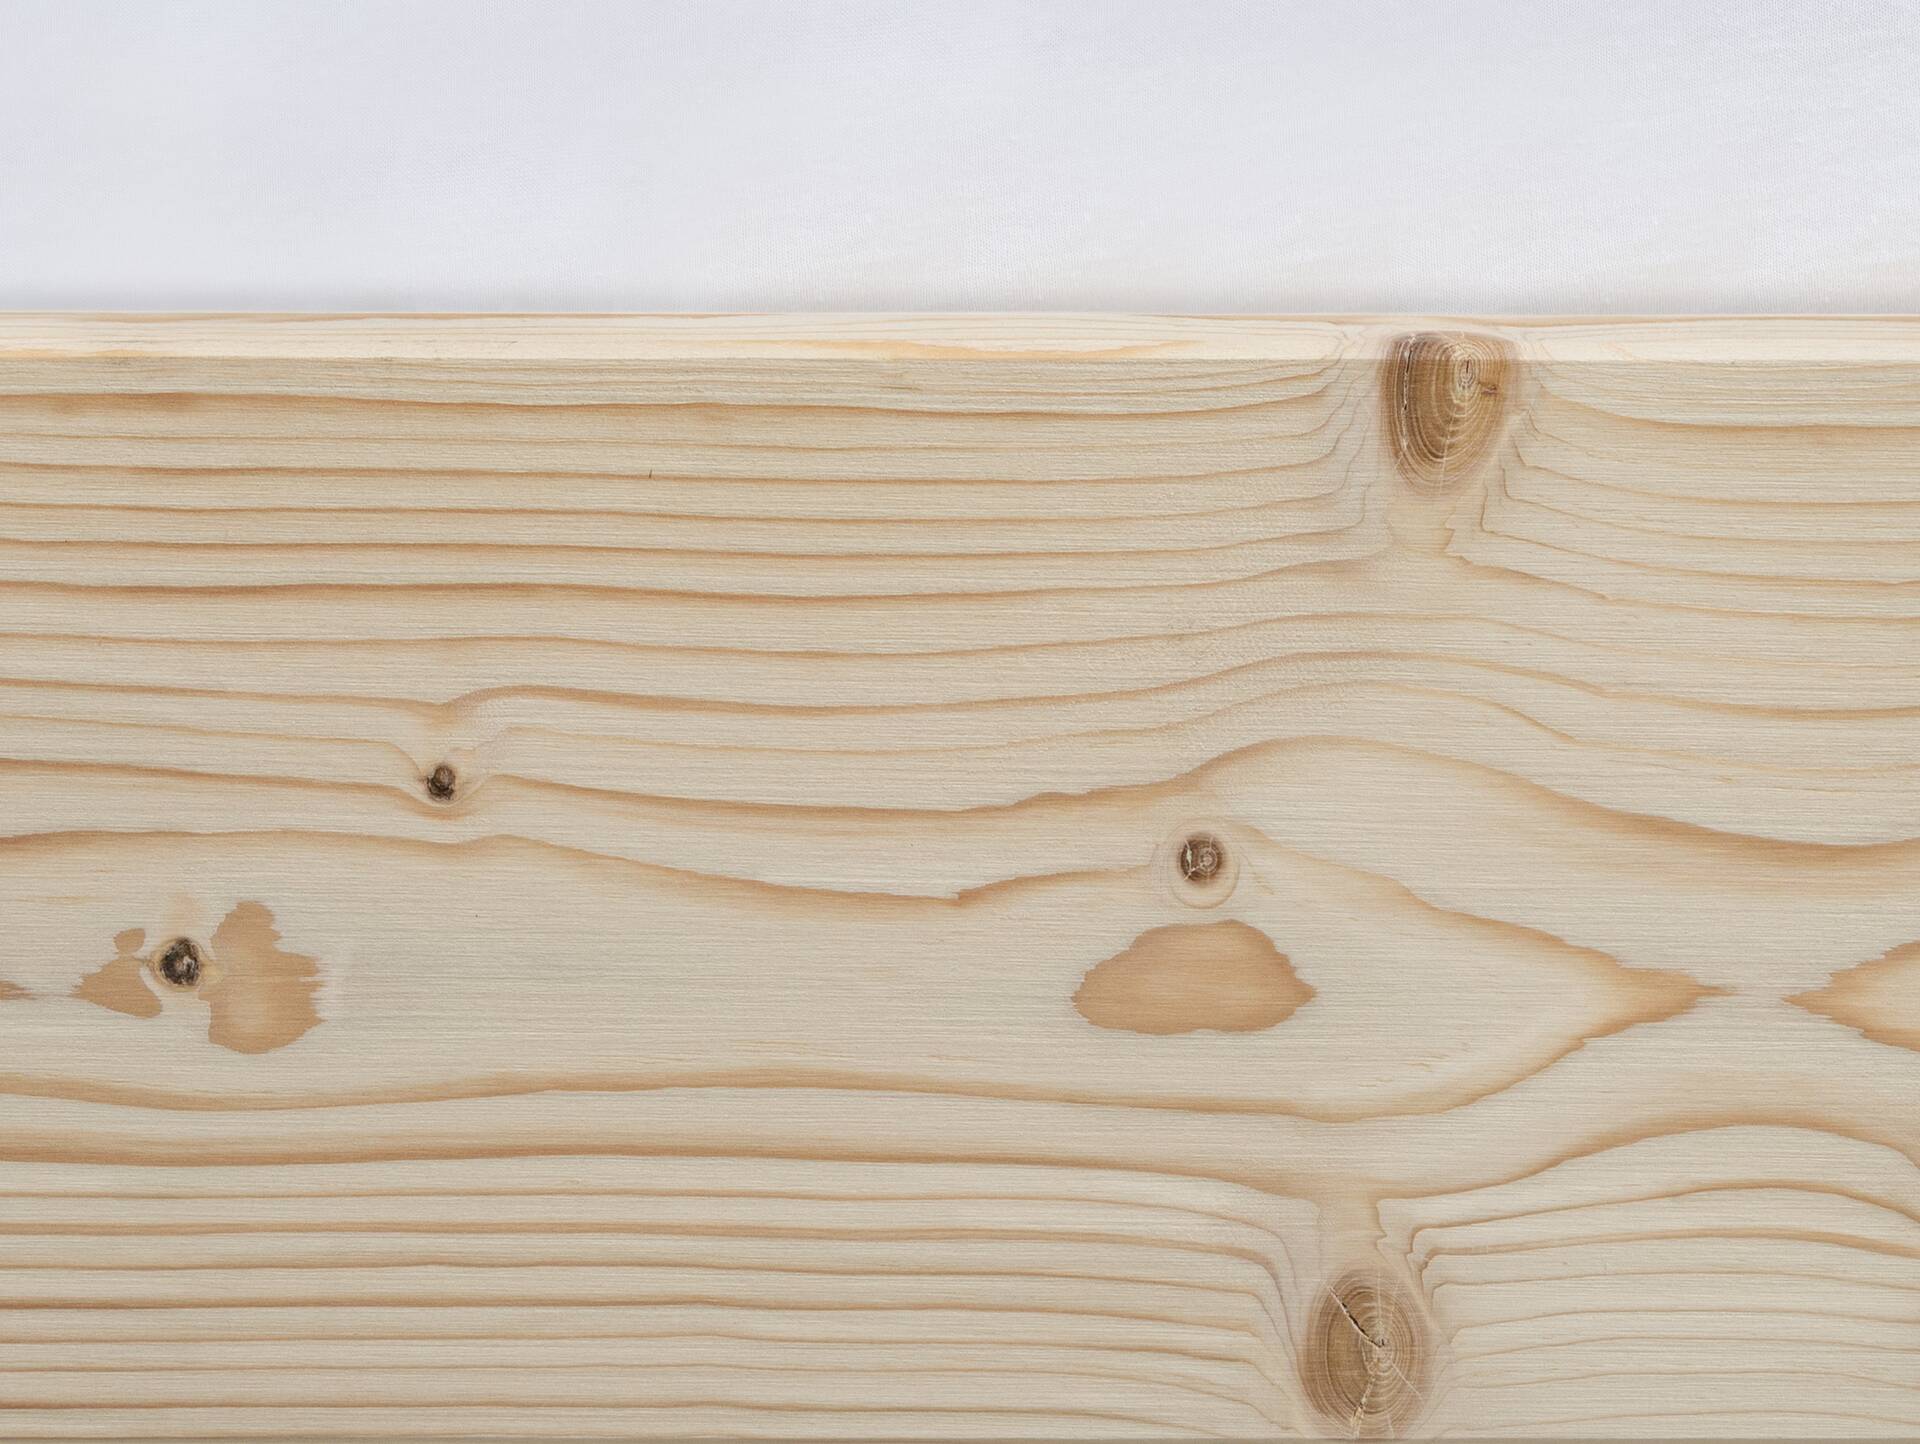 LUKY Kufenbett mit Polsterkopfteil, Material Massivholz, Fichte massiv, Kufen schwarz 140 x 200 cm | natur | Kunstleder Schwarz